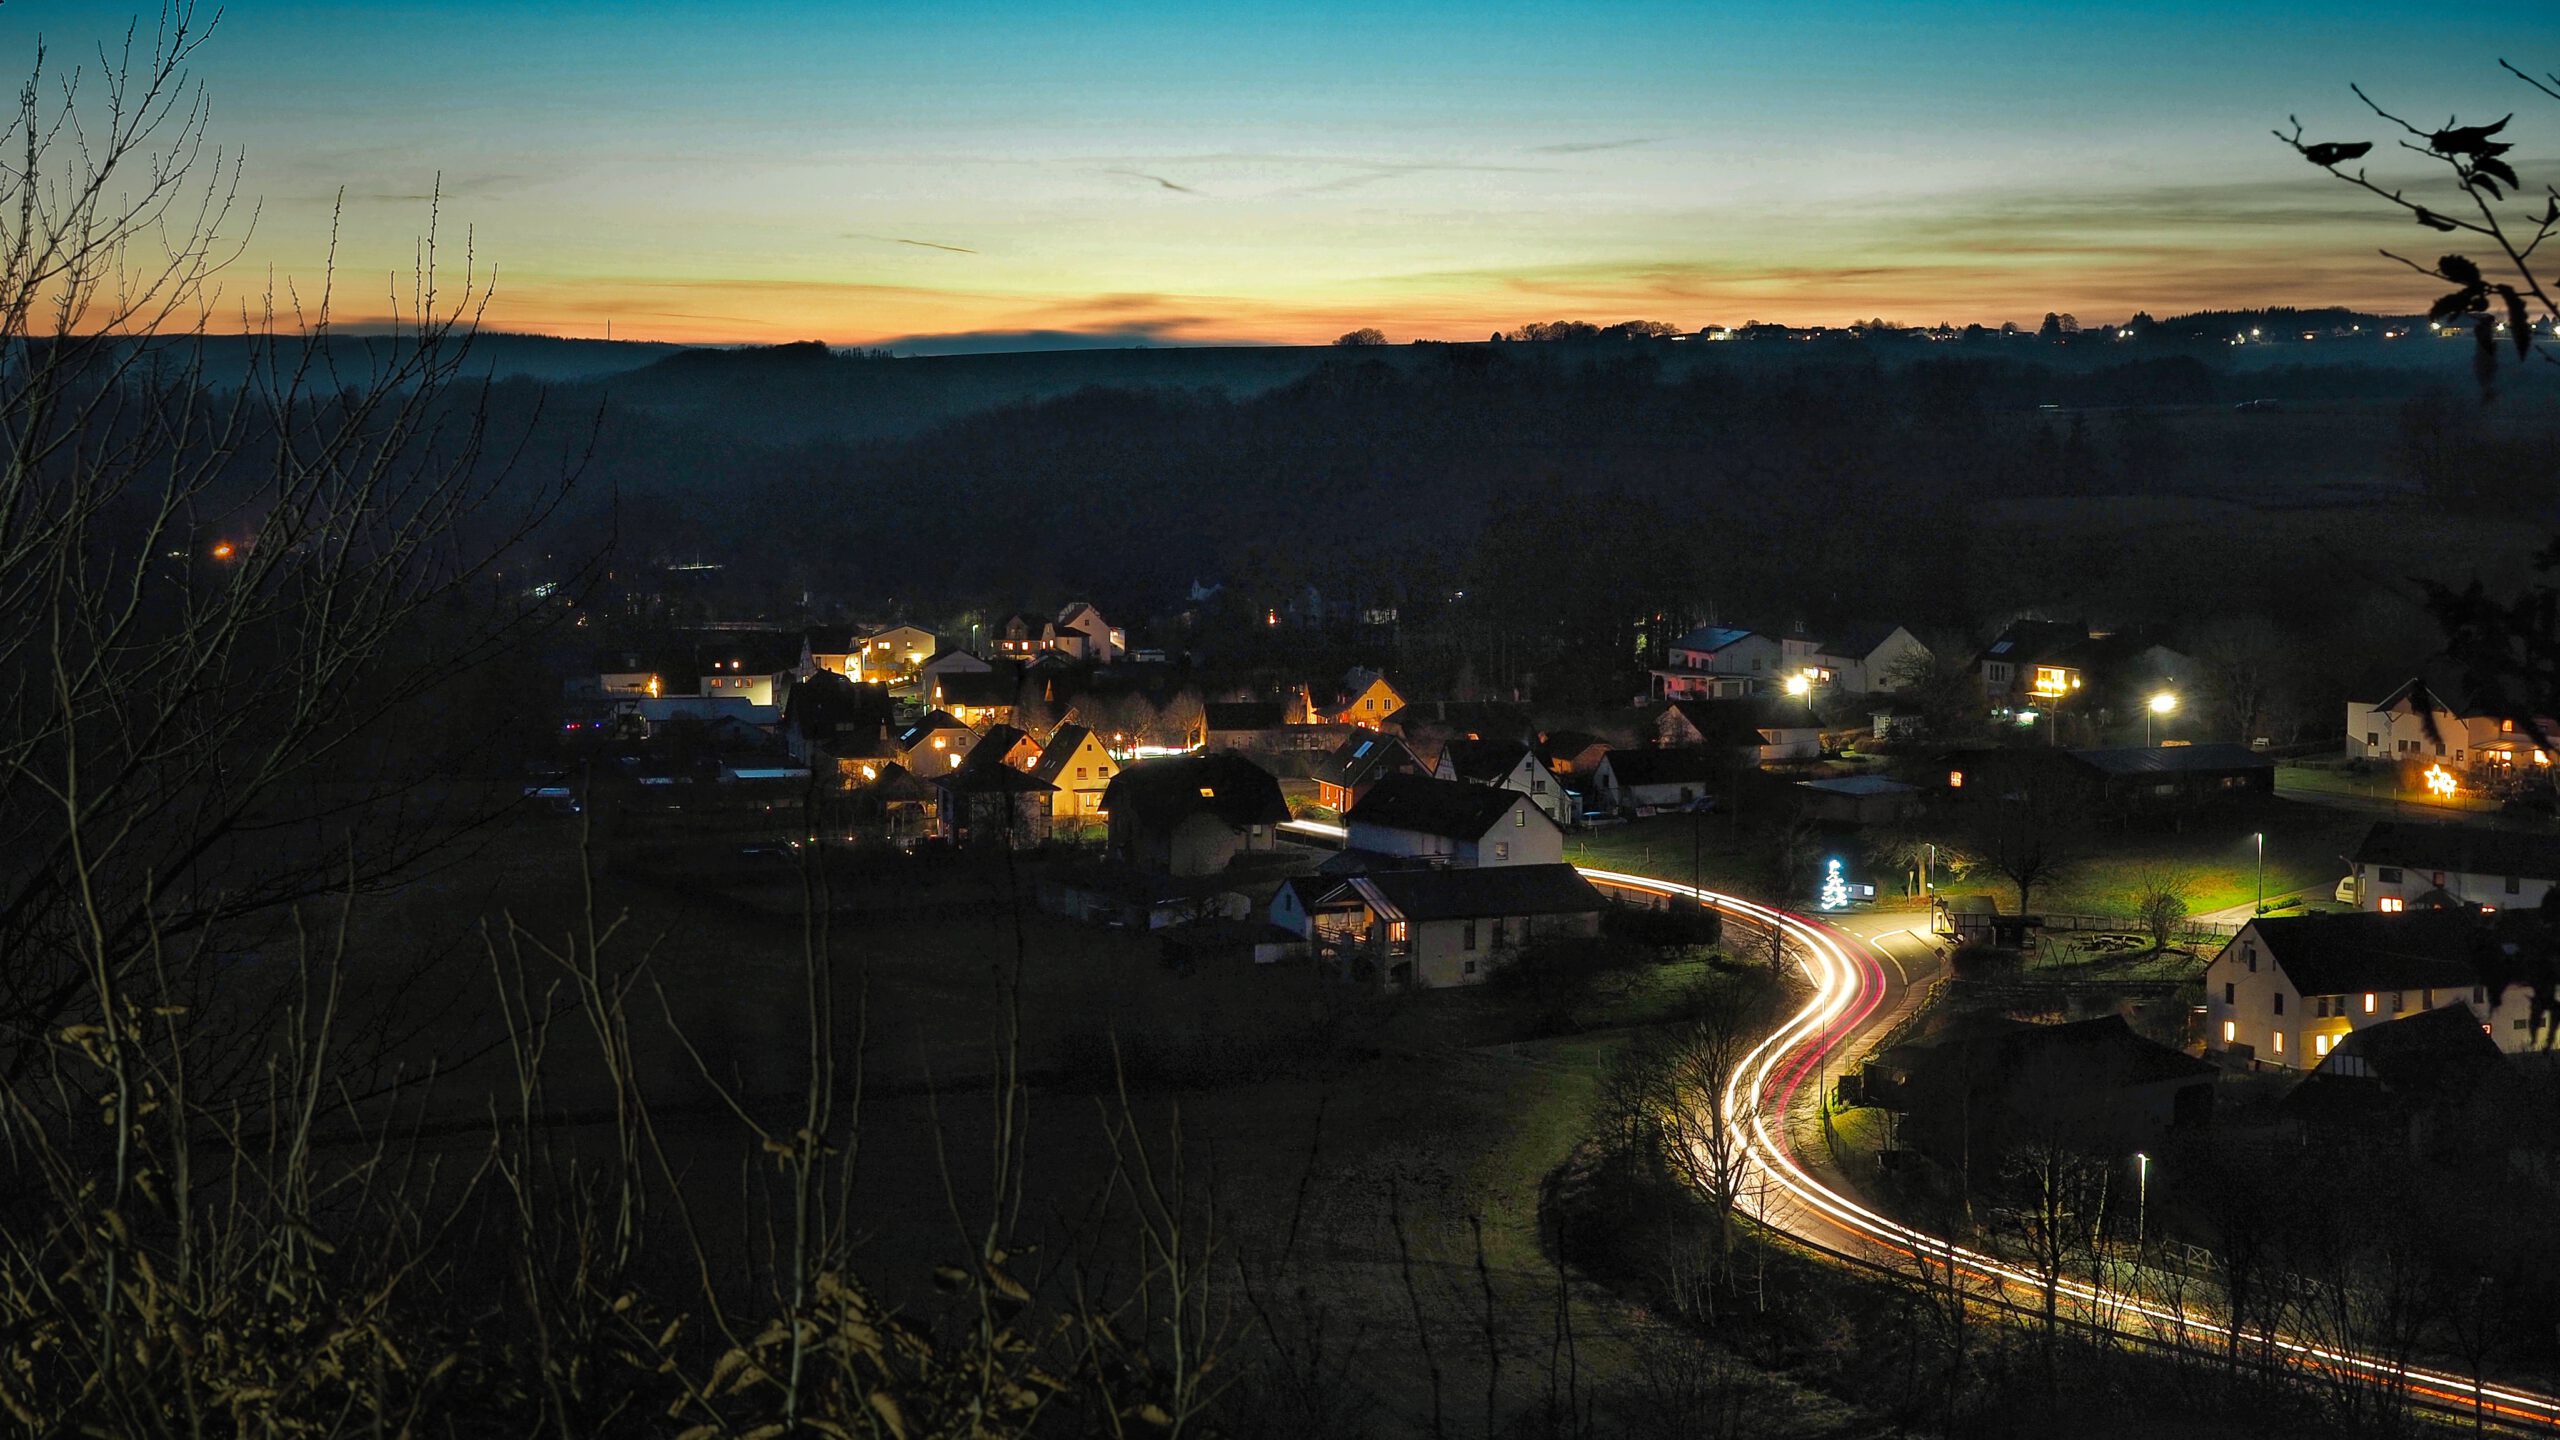 Seelbach bei Nacht mit Lichtspiel von fahrenden Autos